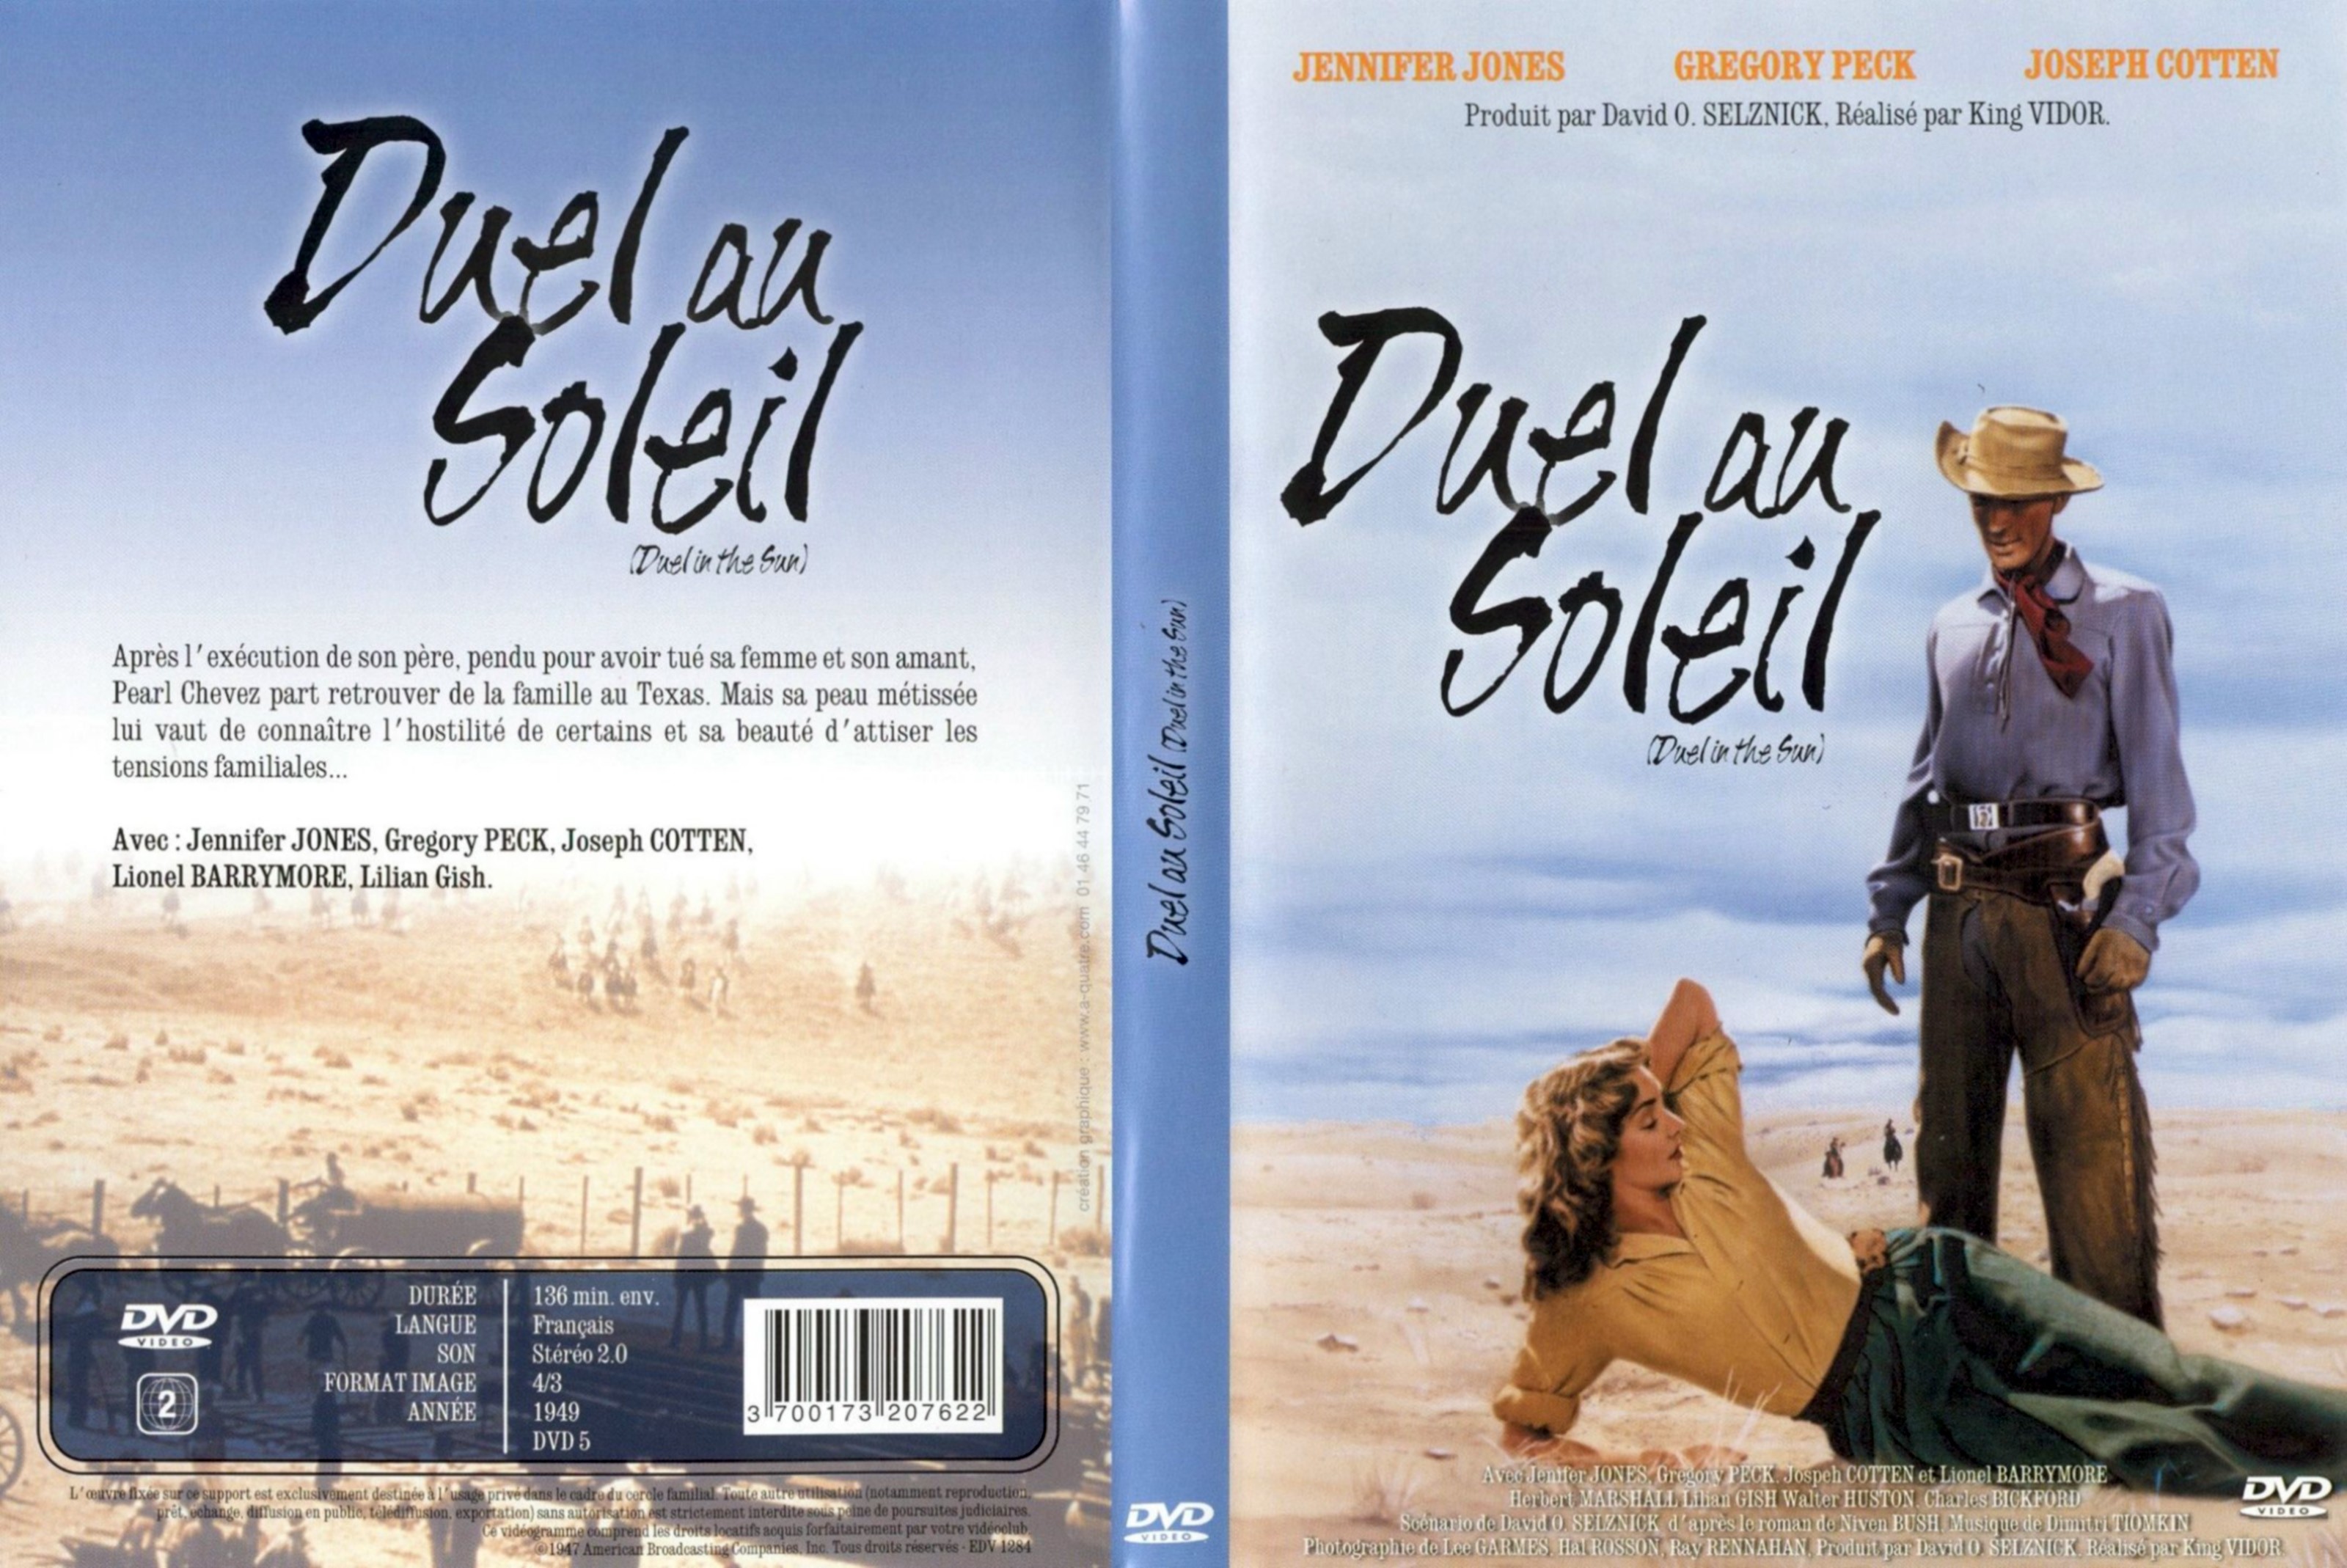 Jaquette DVD Duel au soleil